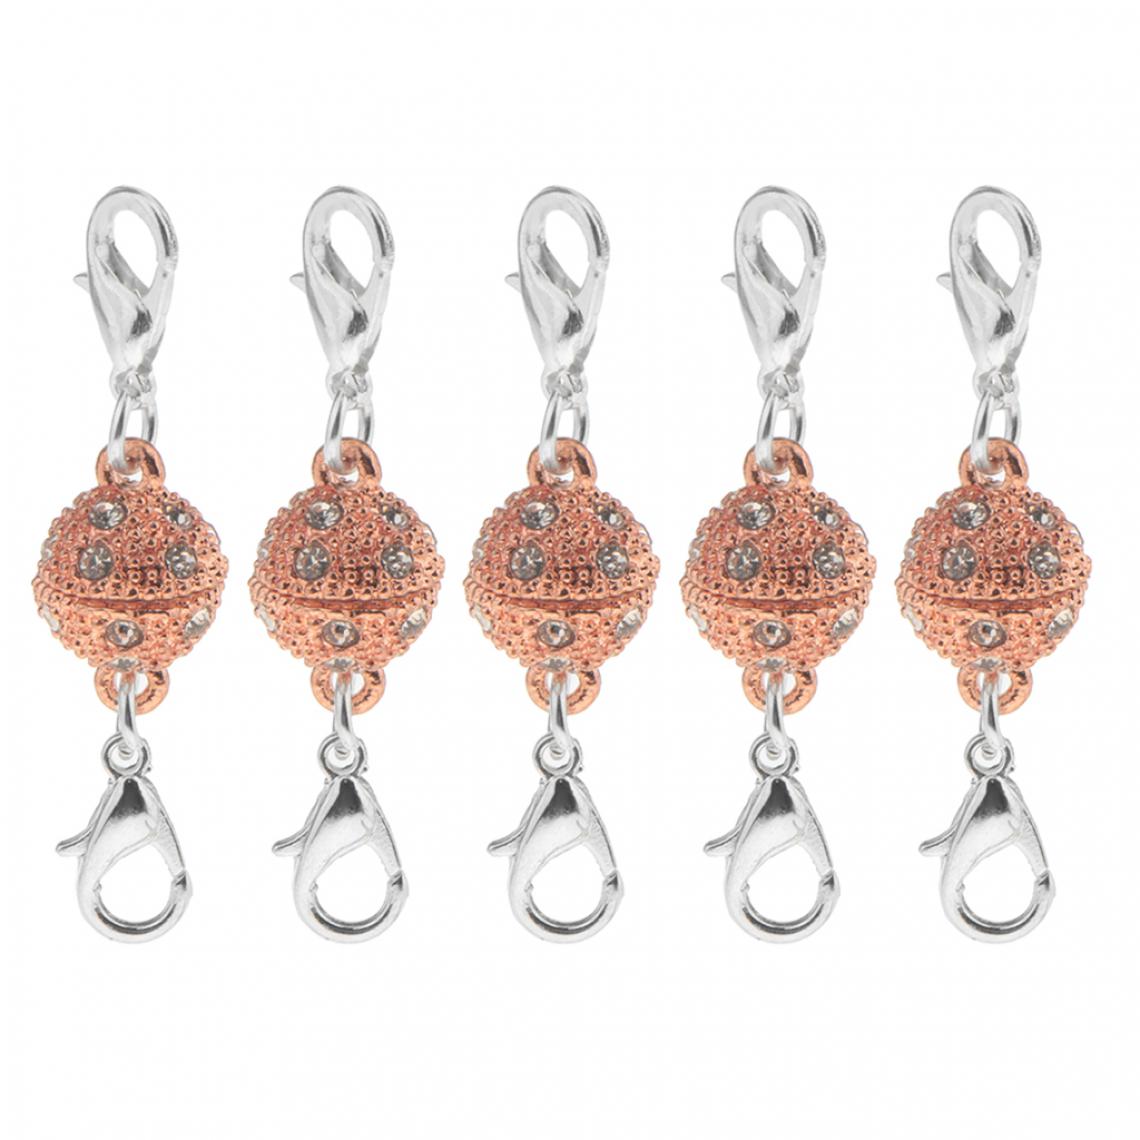 marque generique - 5pcs boule strass homard magnétique fermoirs bijoux bricolage conclusions rose or - Perles